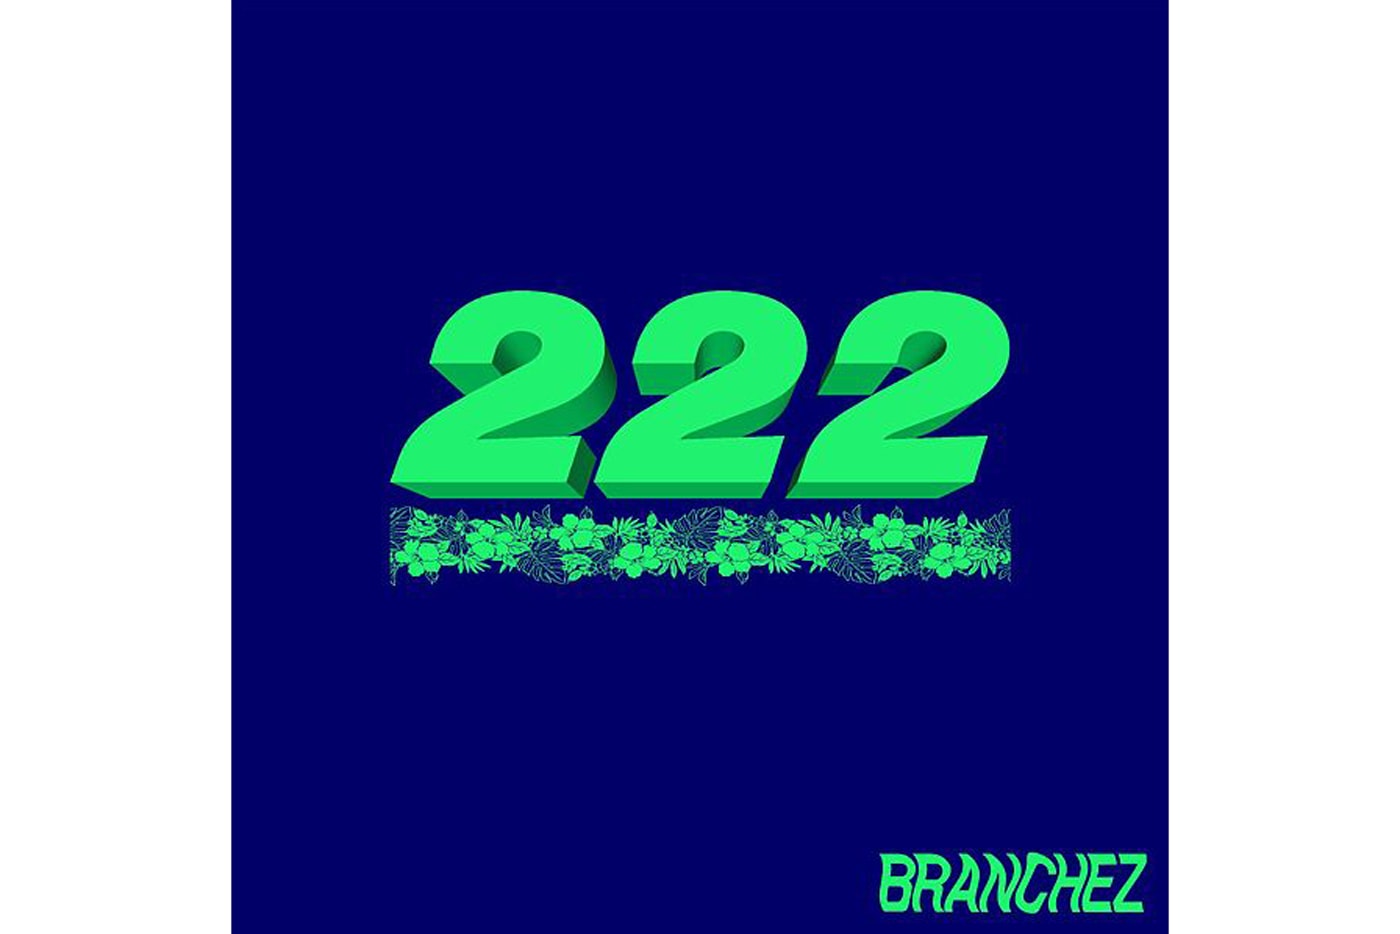 branchez-222-ep-stream